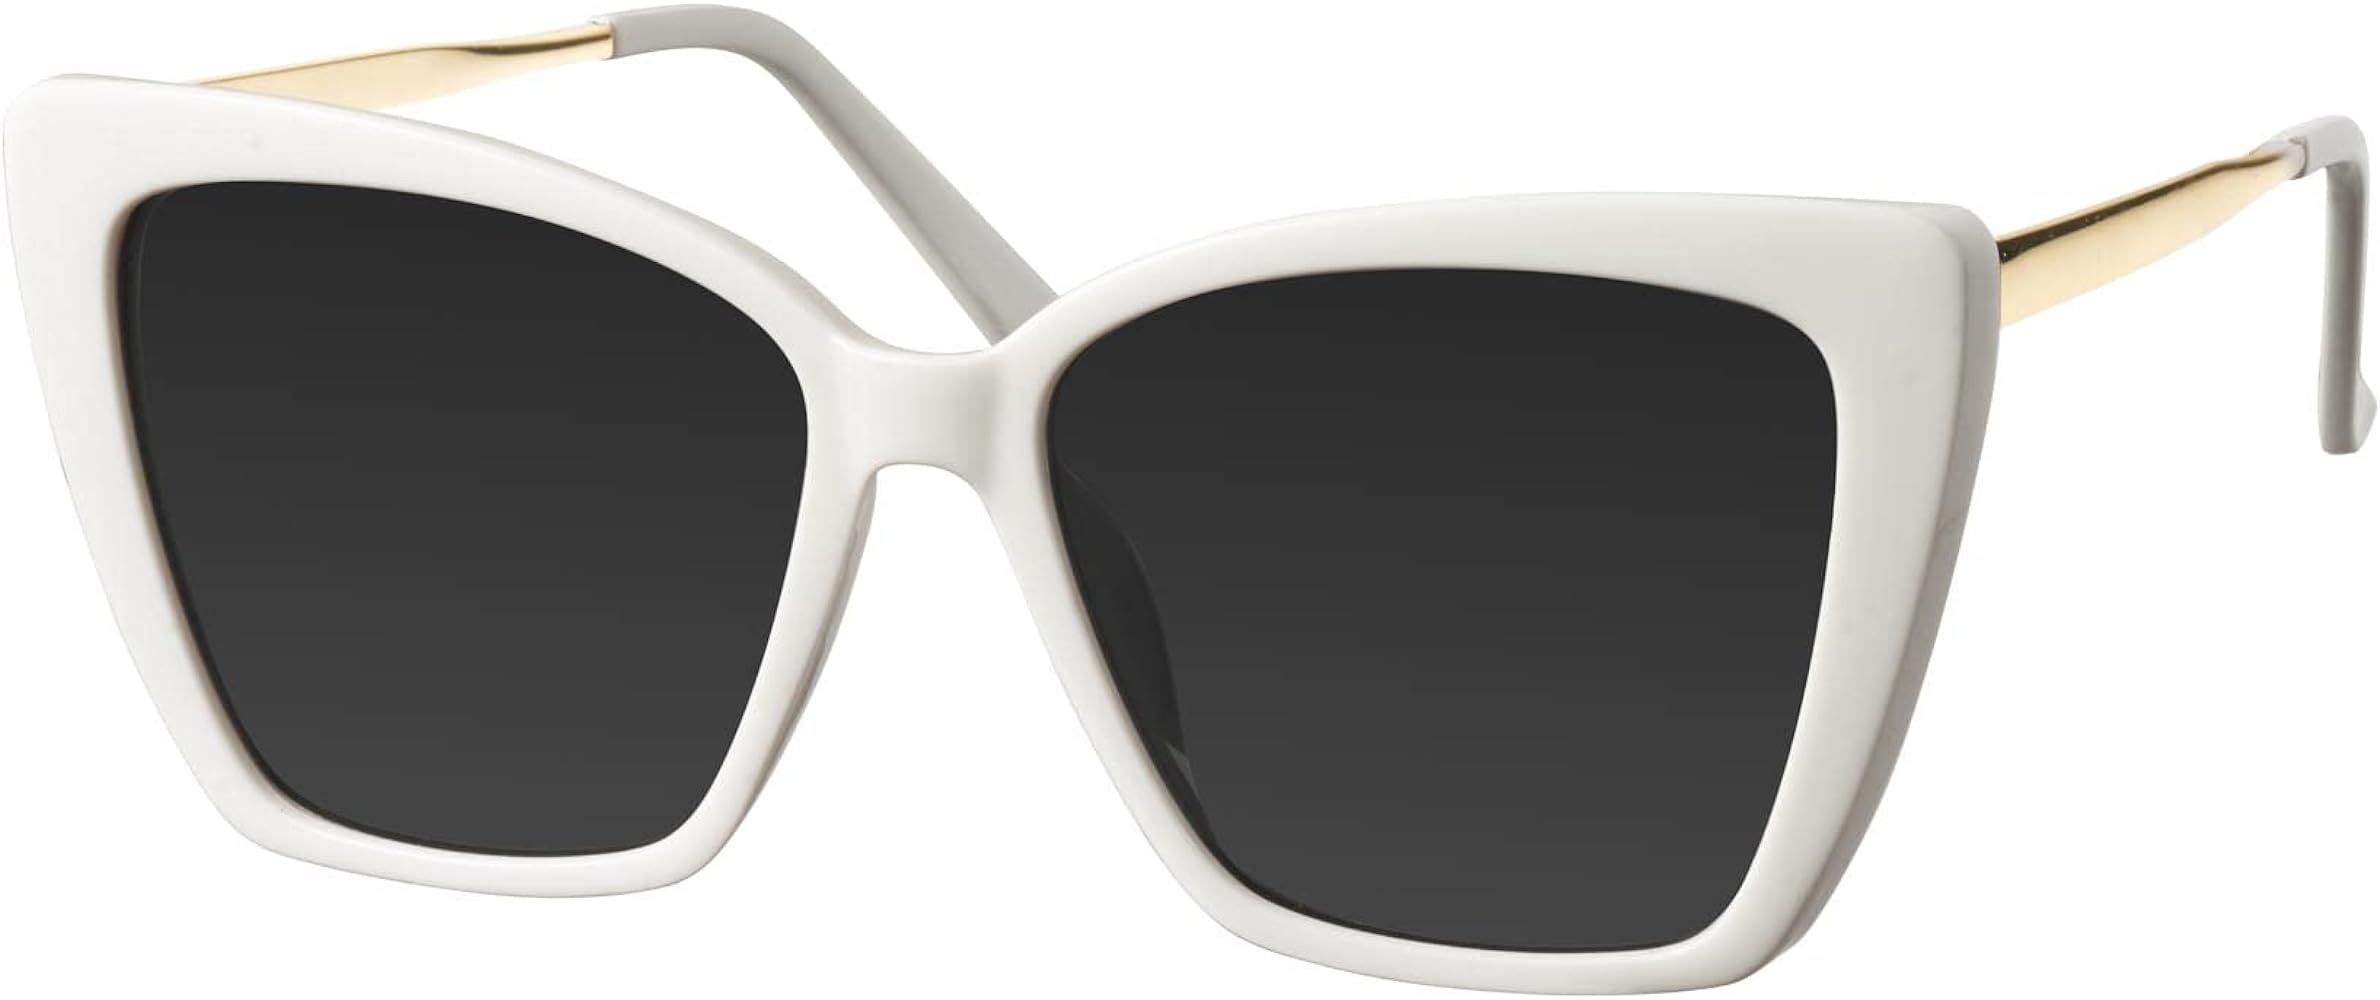 mosanana Oversized Cat Eye Sunglasses for Women Trendy Style MODEL-GLAM | Amazon (US)